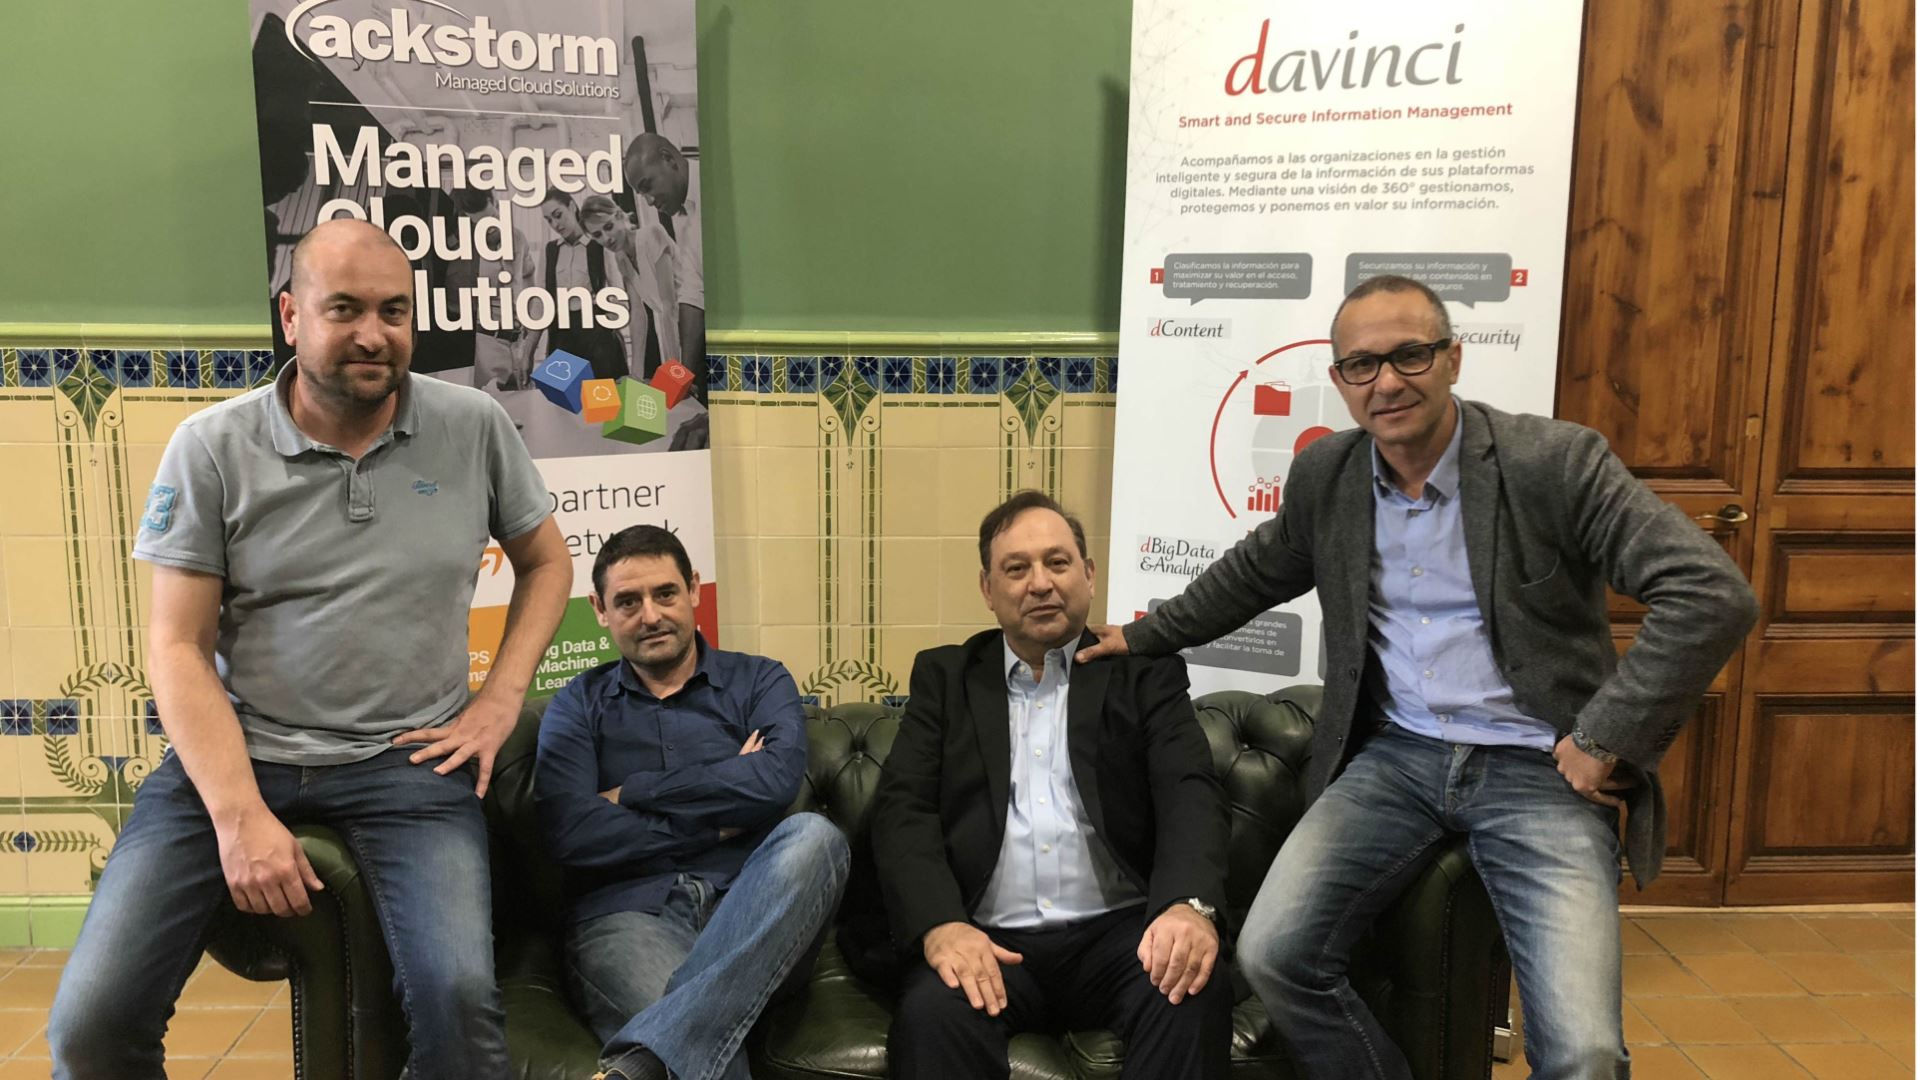 Davinci refuerza su oferta de BI y seguridad en entornos cloud con las soluciones de Ackstorm